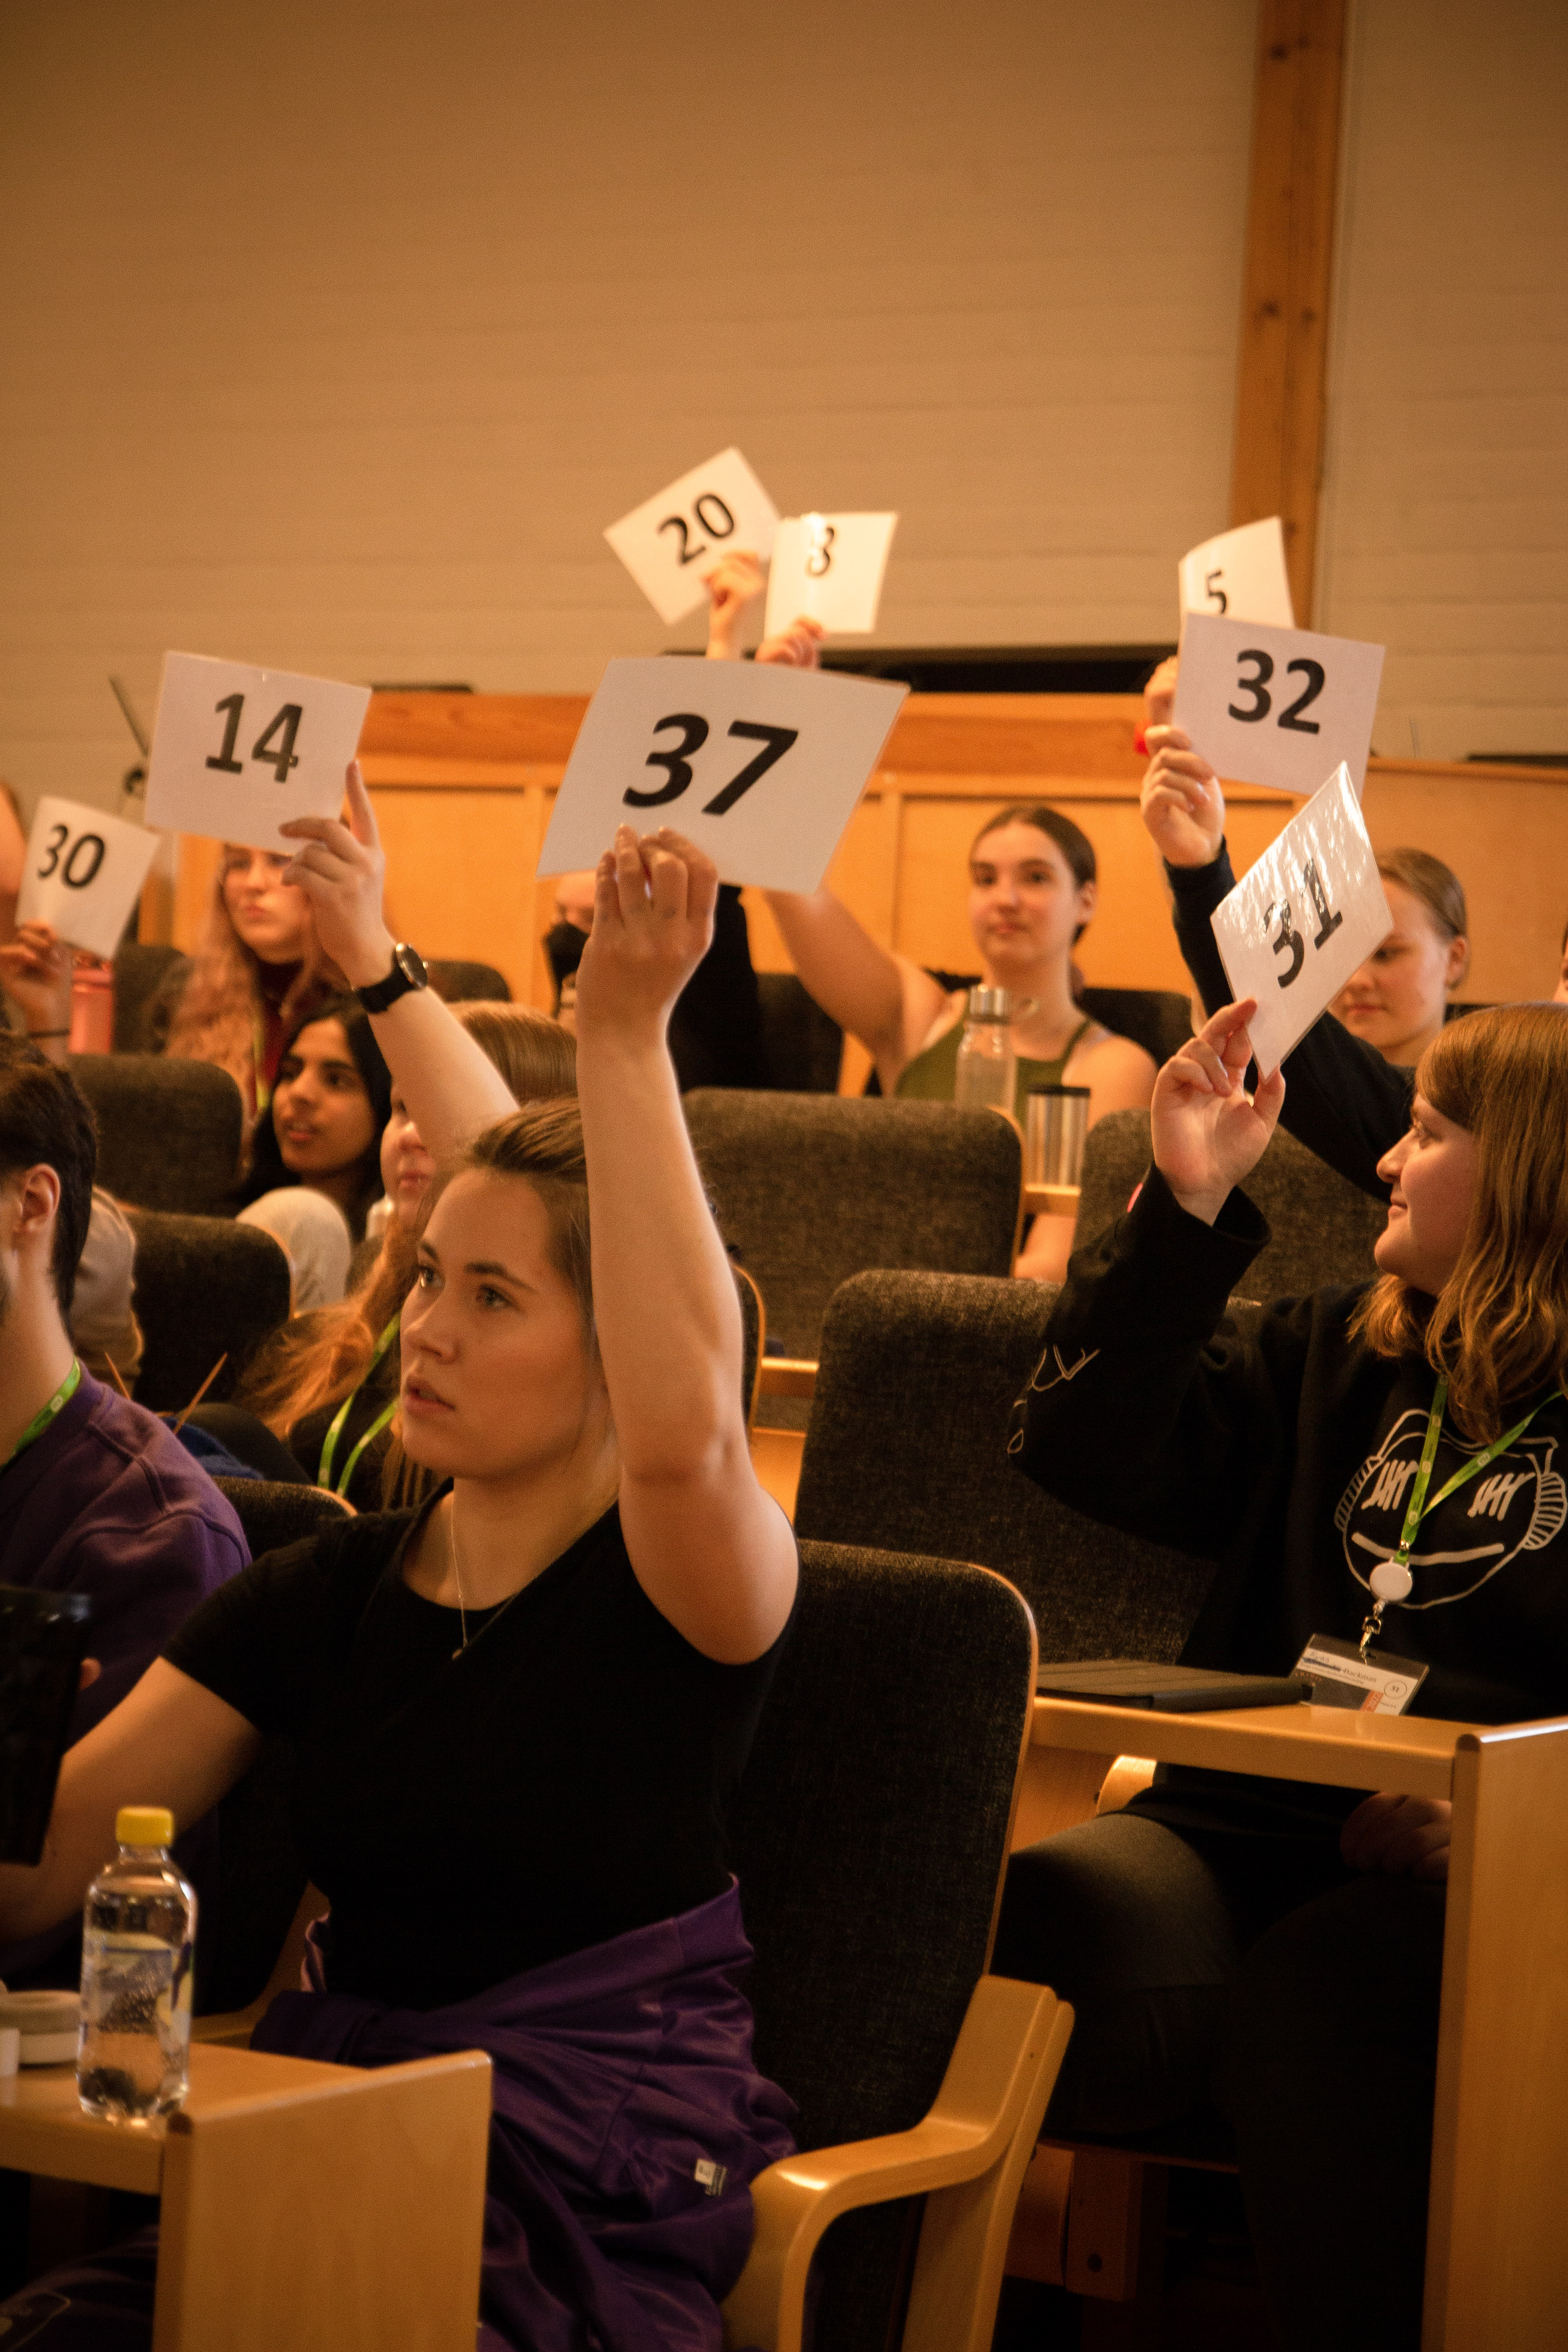 Ungdomar i auditorium håller upp kort med siffror på.